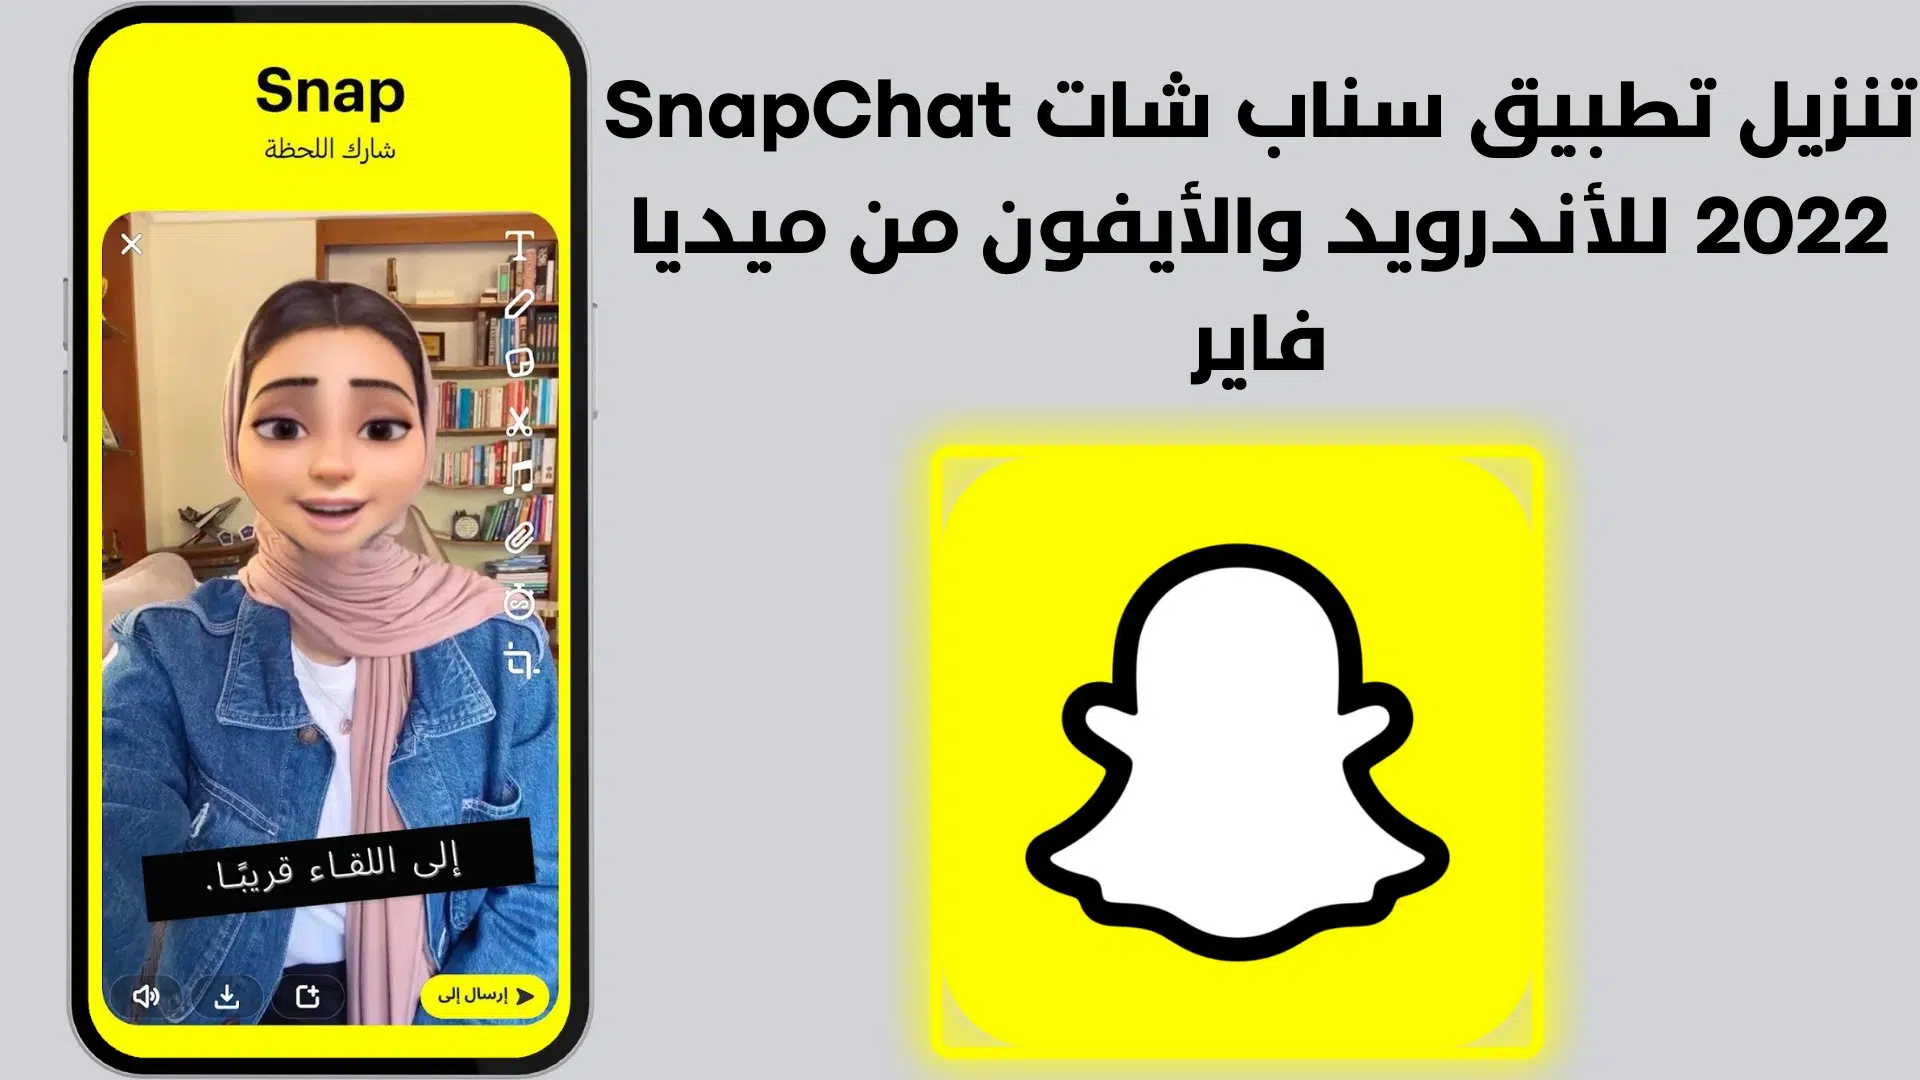 تنزيل تطبيق سناب شات SnapChat 2022 للأندرويد والأيفون من ميديا فاير